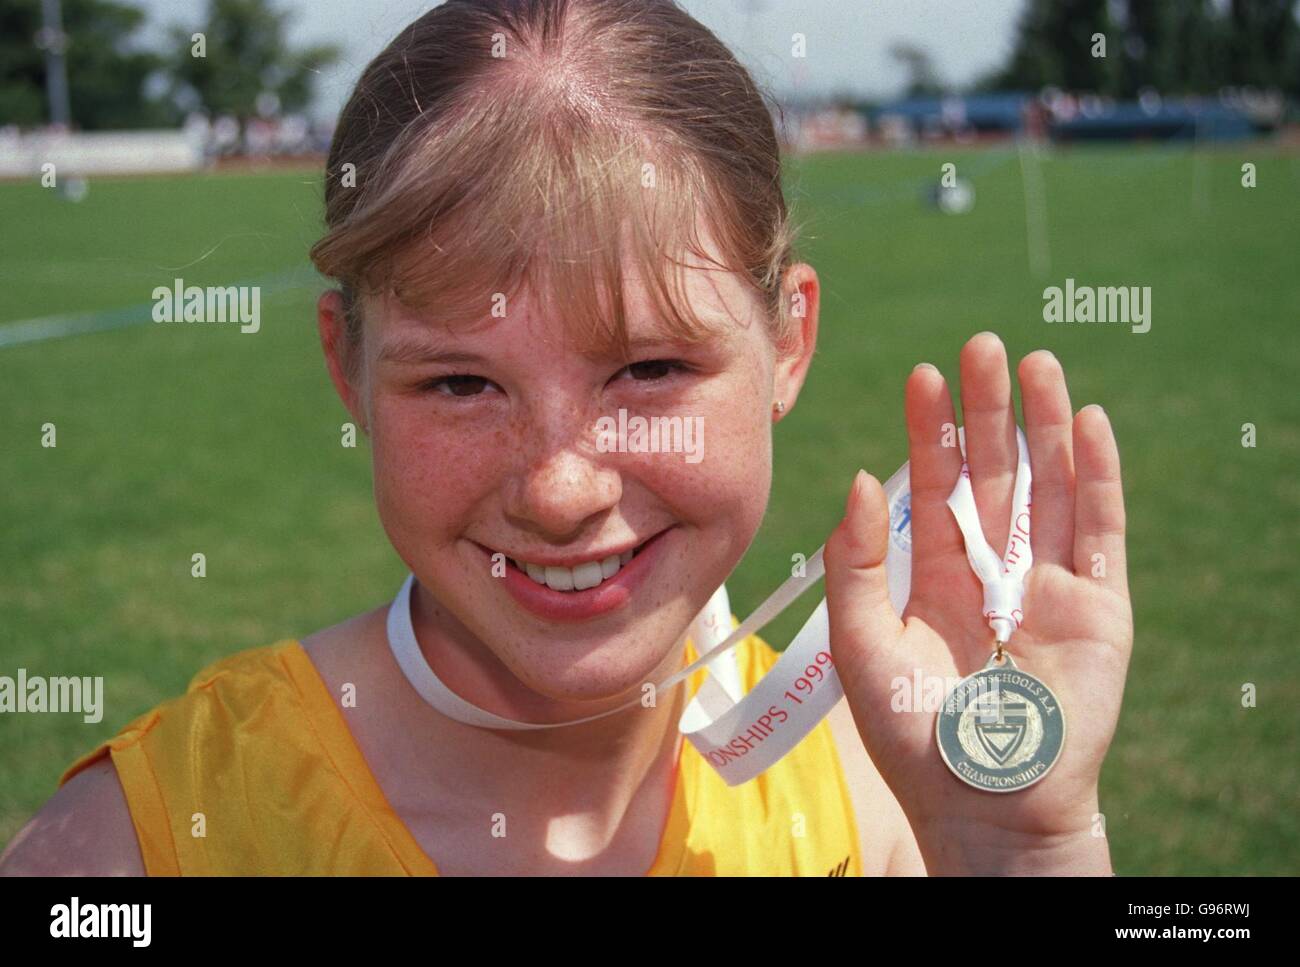 Athlétisme - Championnat des écoles anglaises - Bury St Edmunds.Sara McGreavy, 16 ans de Leamington Spa avec sa médaille d'or pour l'événement de 80 mètres pour les filles intermédiaires Banque D'Images